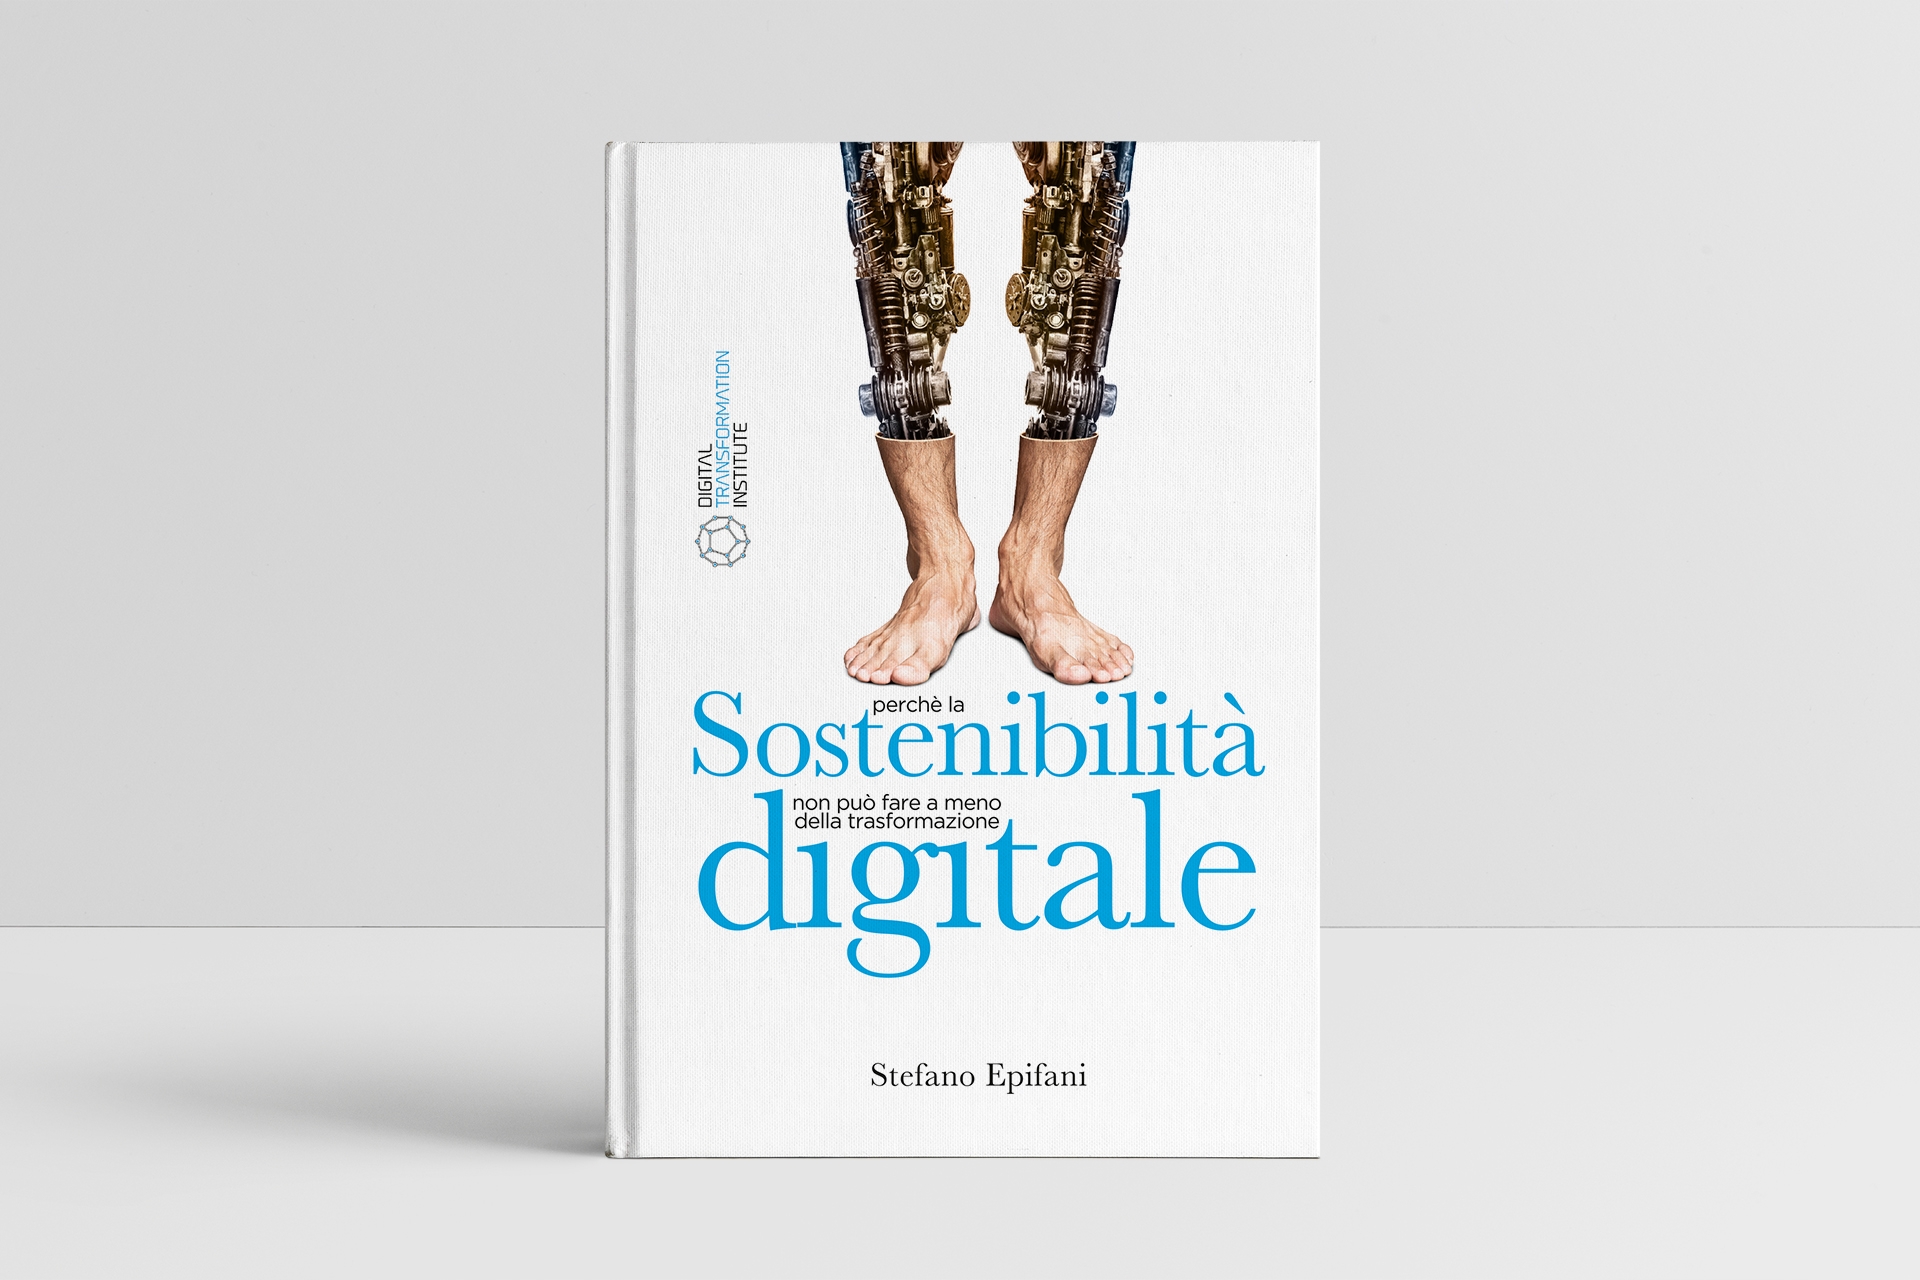 Stefano Epifani: libri "Qëndrueshmëria dixhitale: pse qëndrueshmëria nuk mund të bëjë pa transformimin dixhital" nga Stefano Epifani